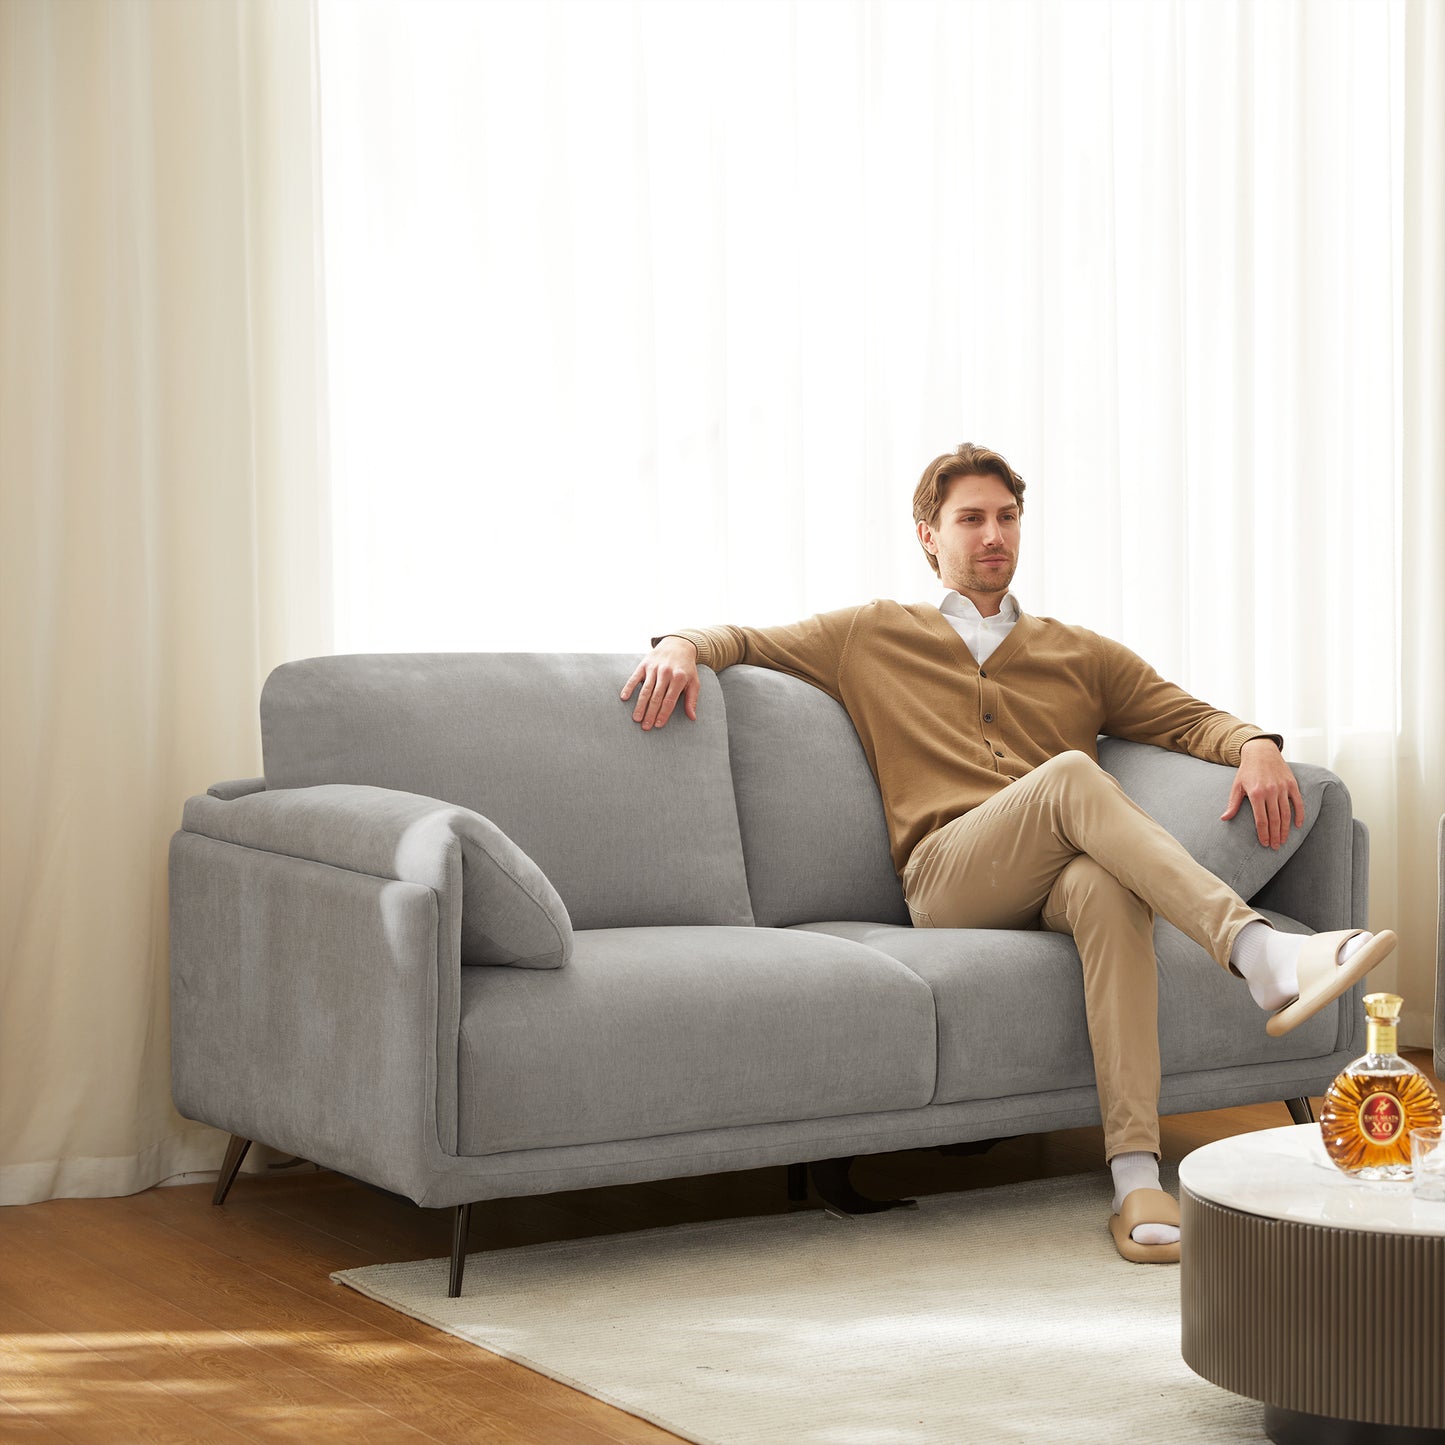 COLAMY 3 Piece Living Room Sofa Set with Elephant-Ear Arm Grey Color